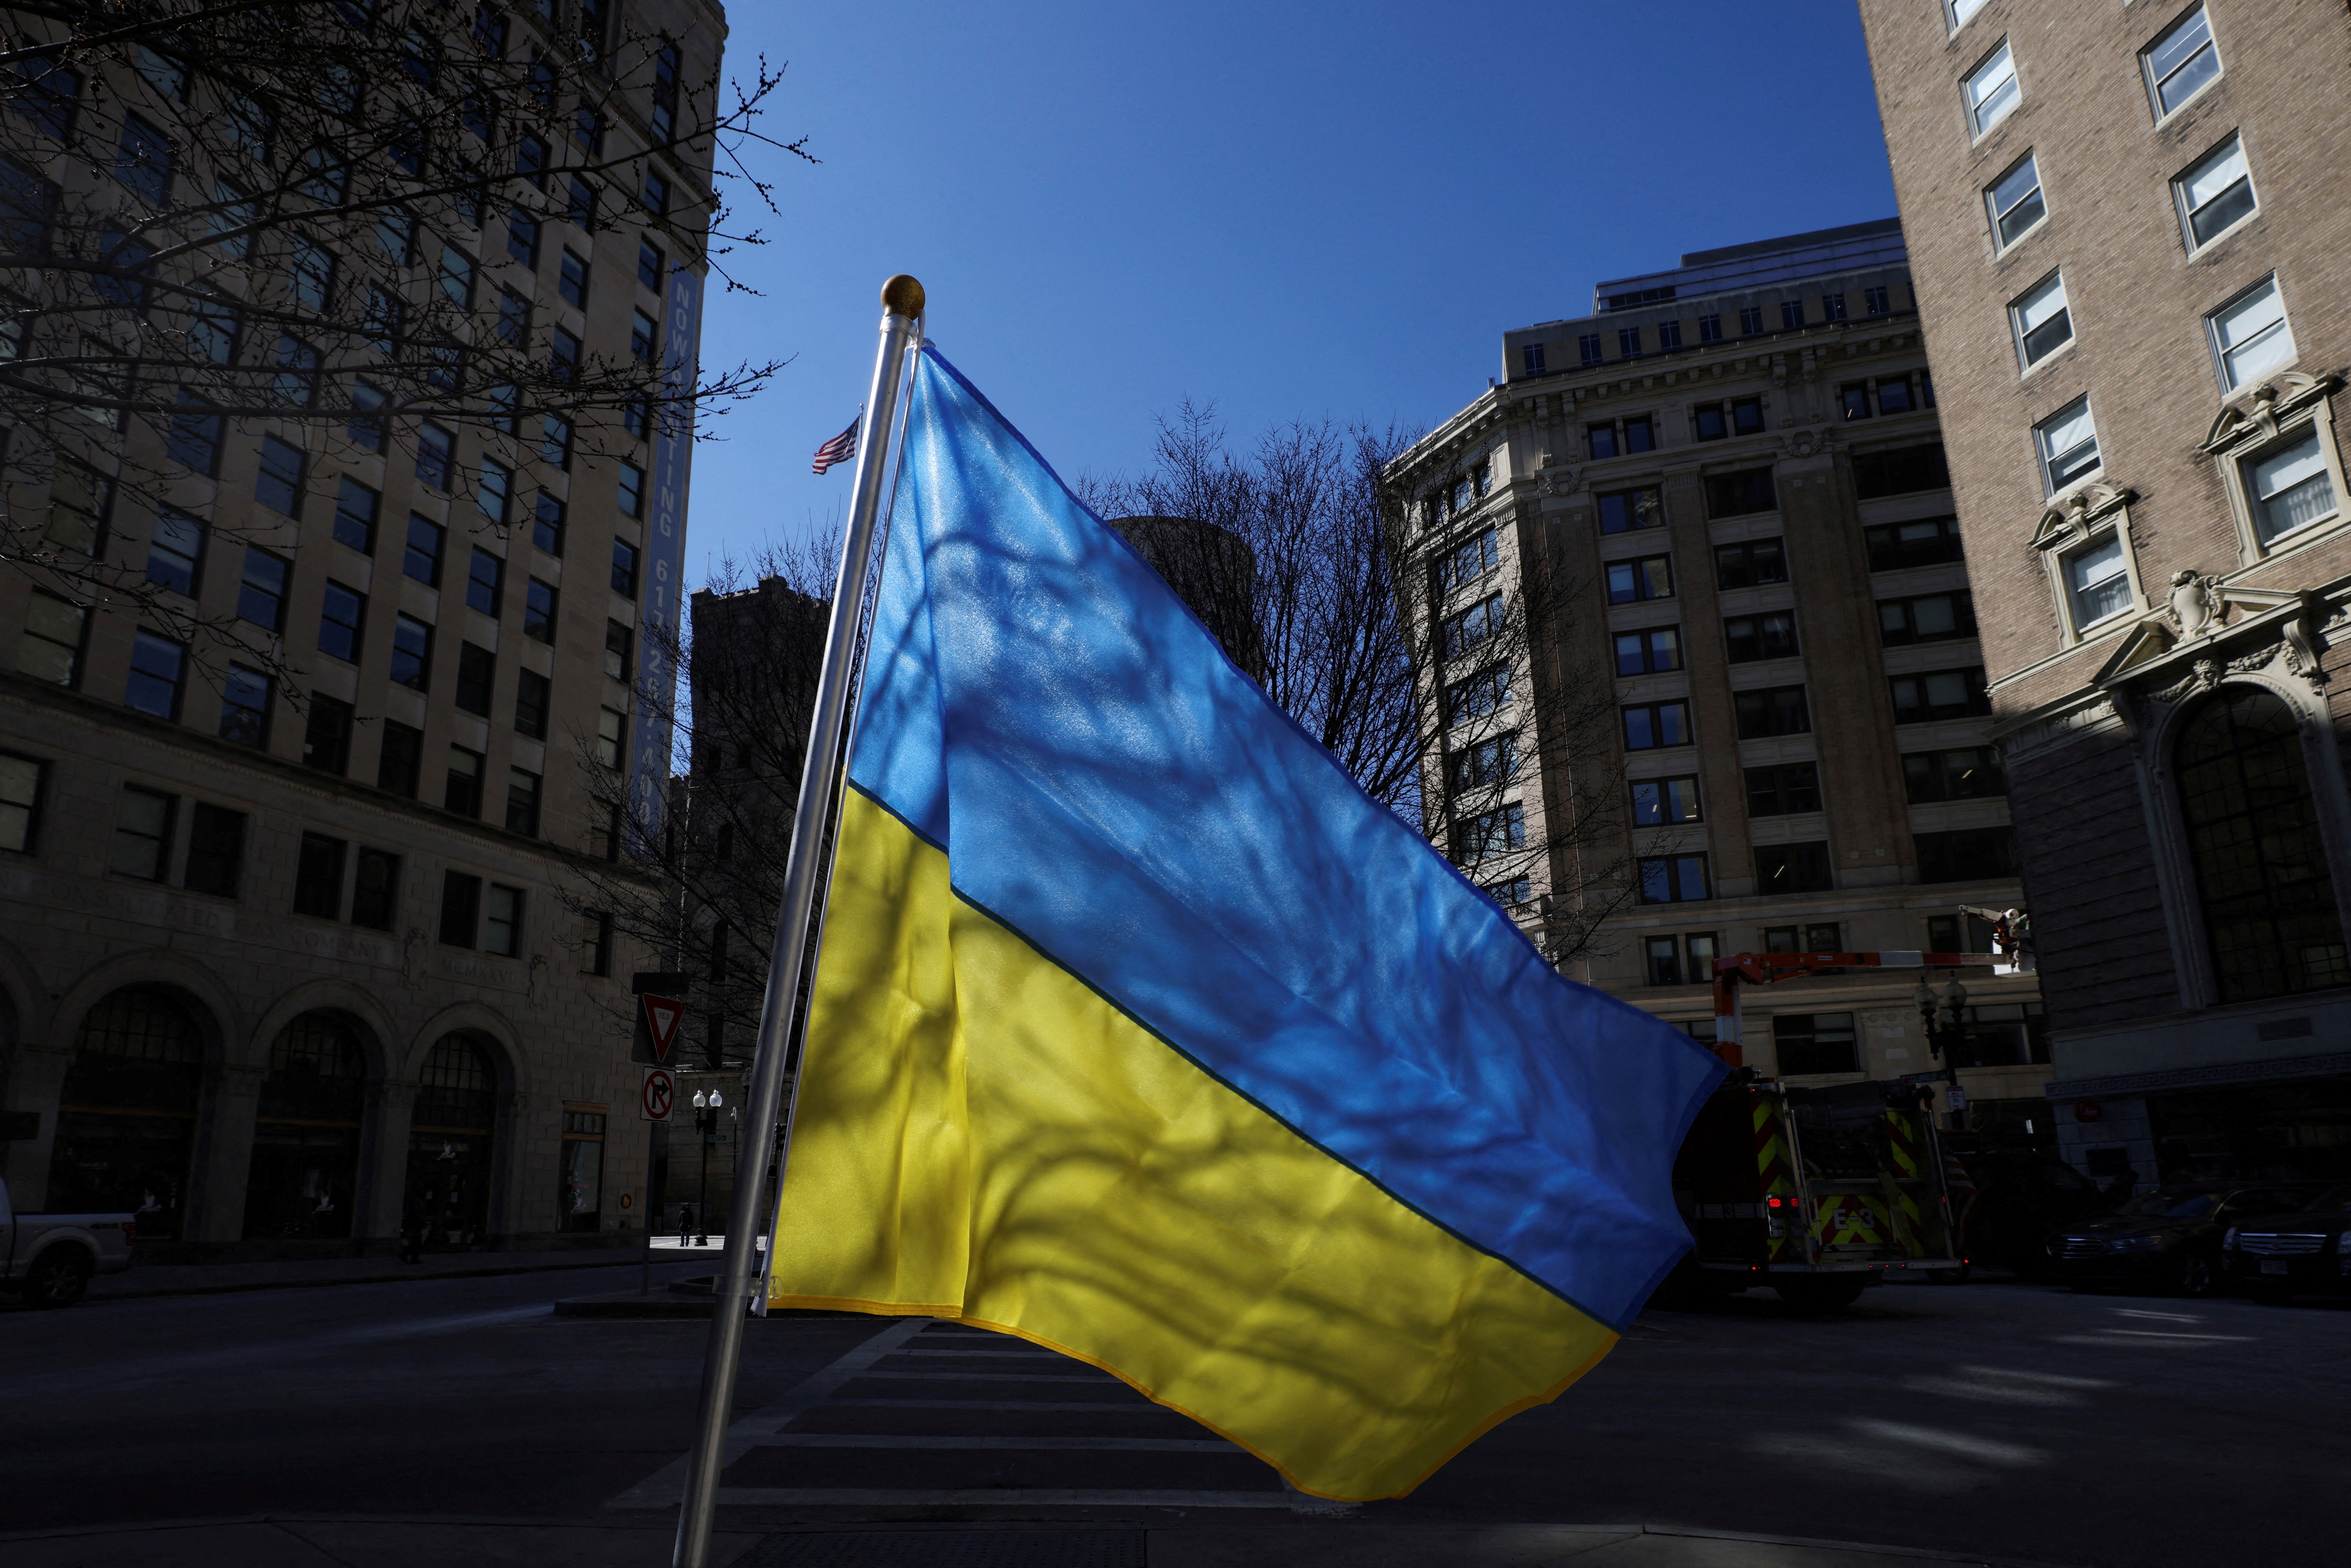 A Ukrainian flag flies in Boston